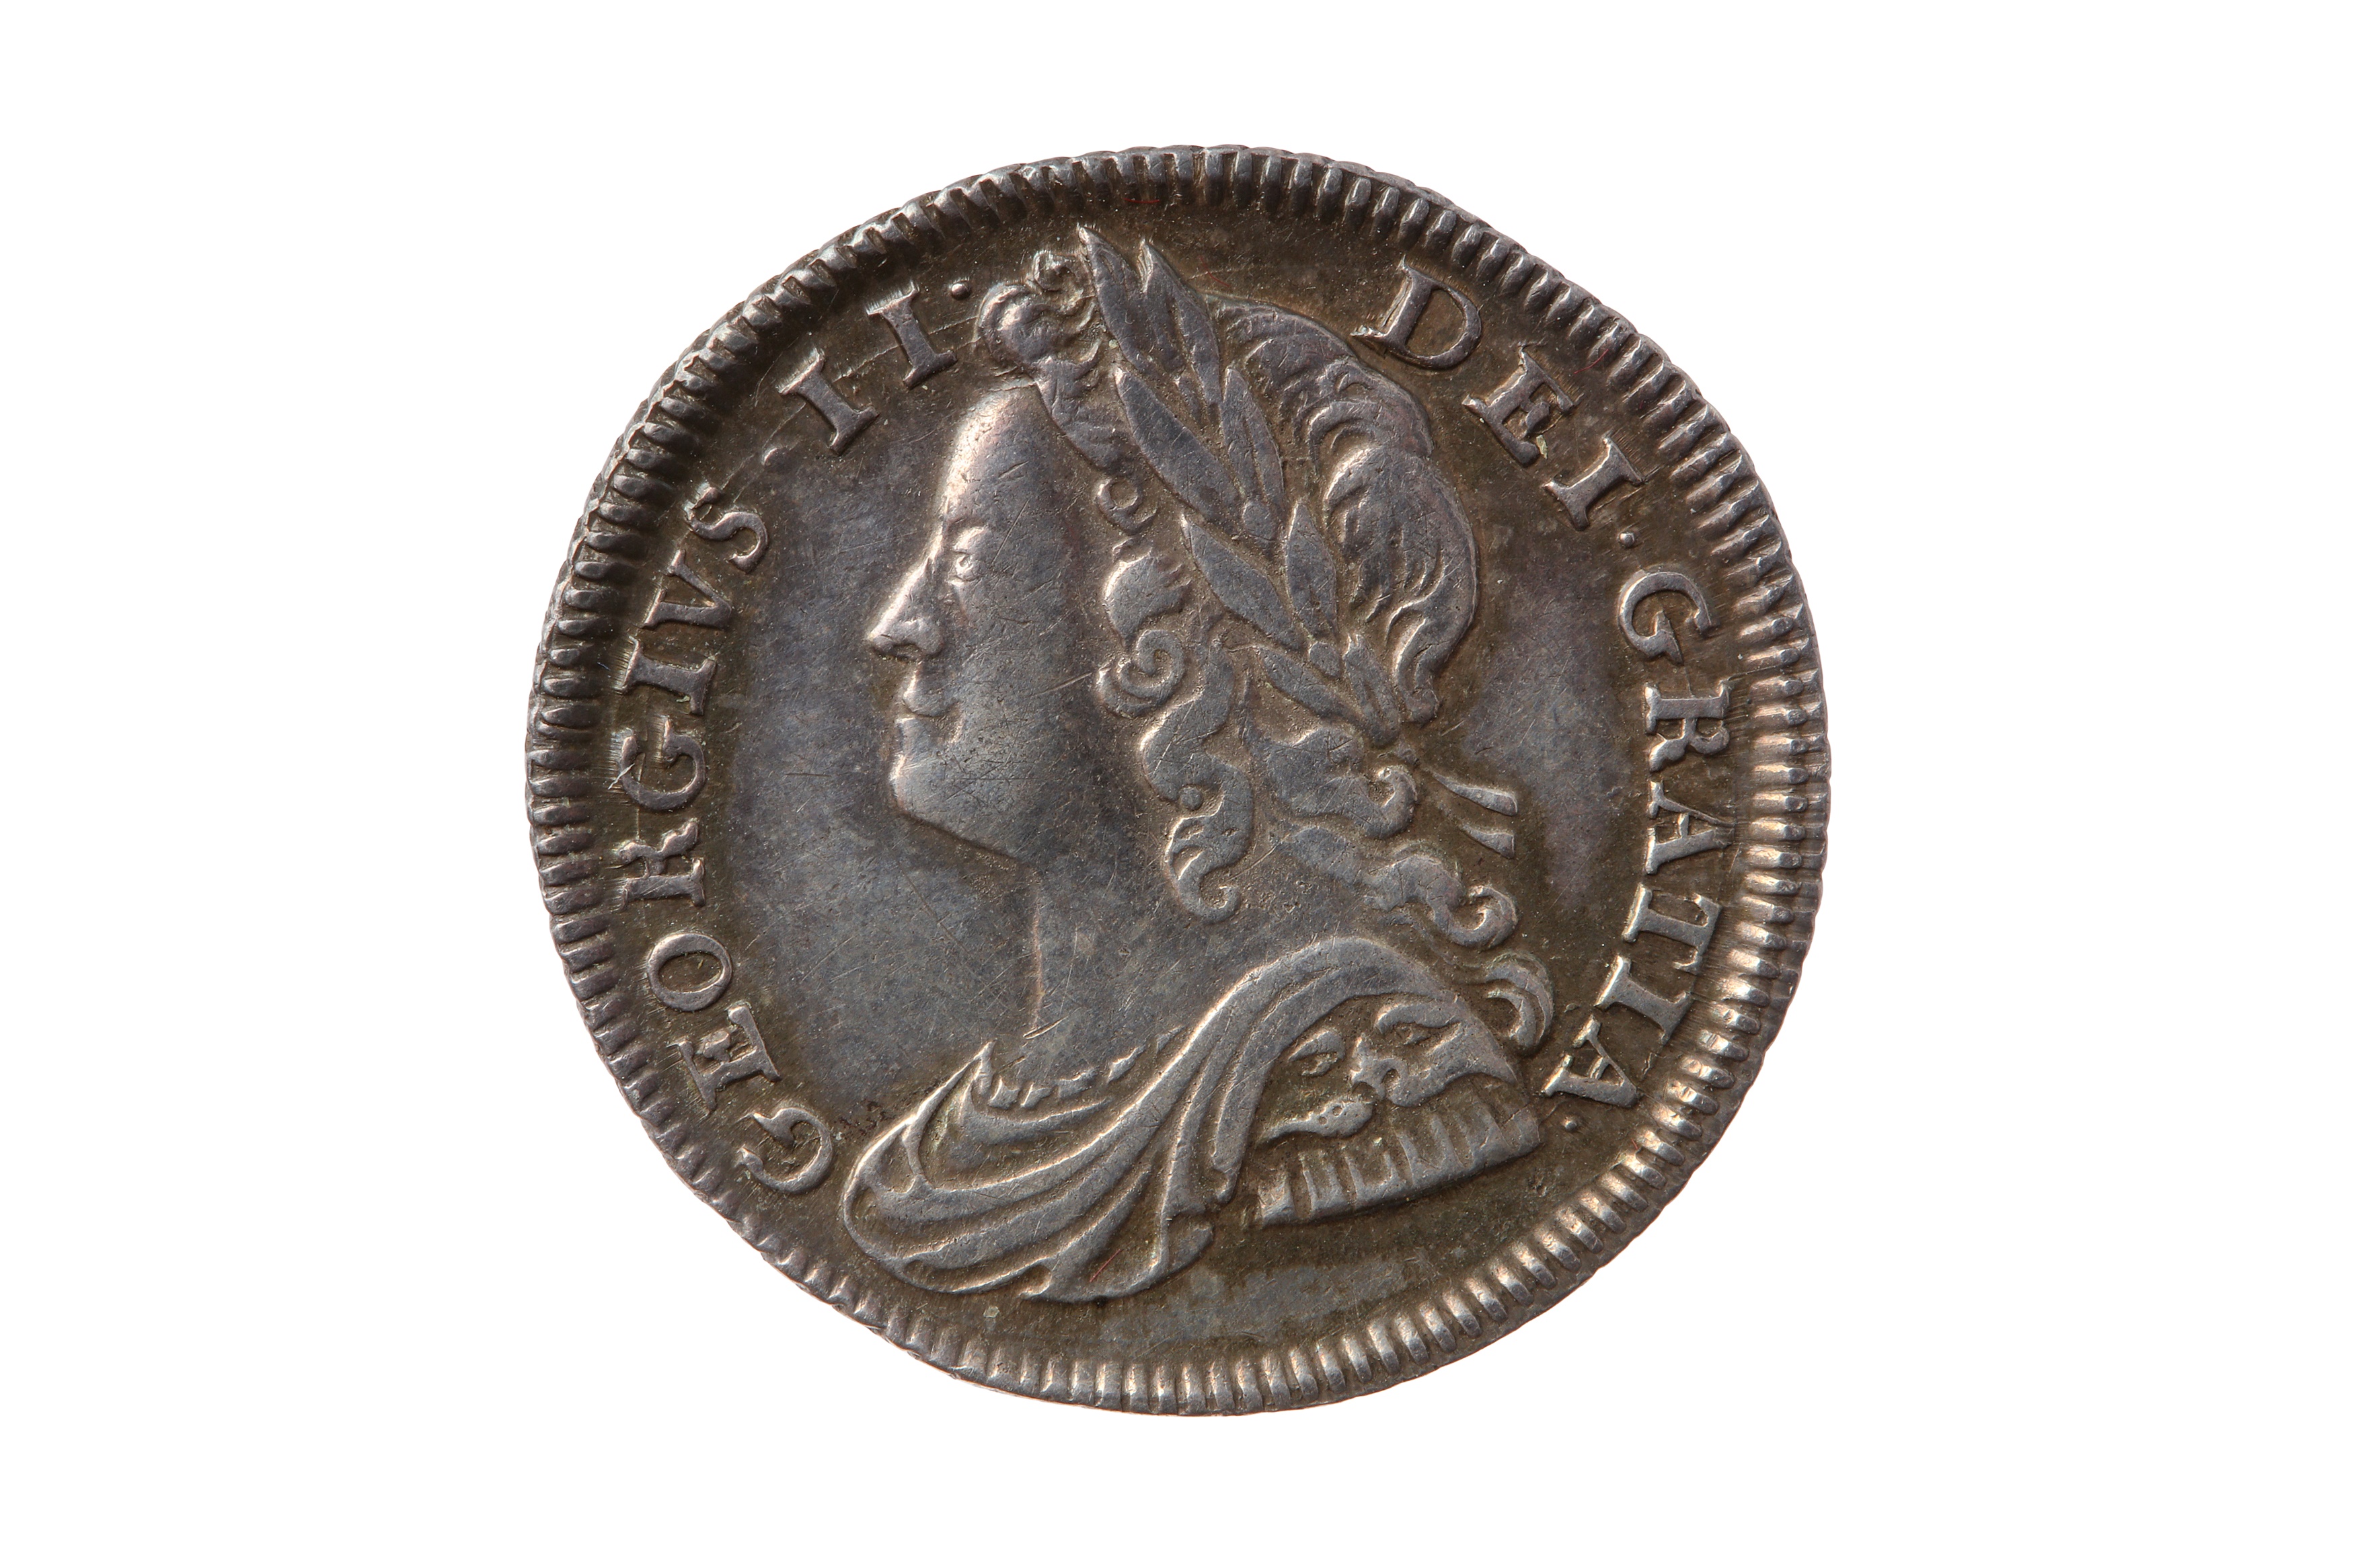 GEORGE II (1727 - 1760), 1739 SIXPENCE.